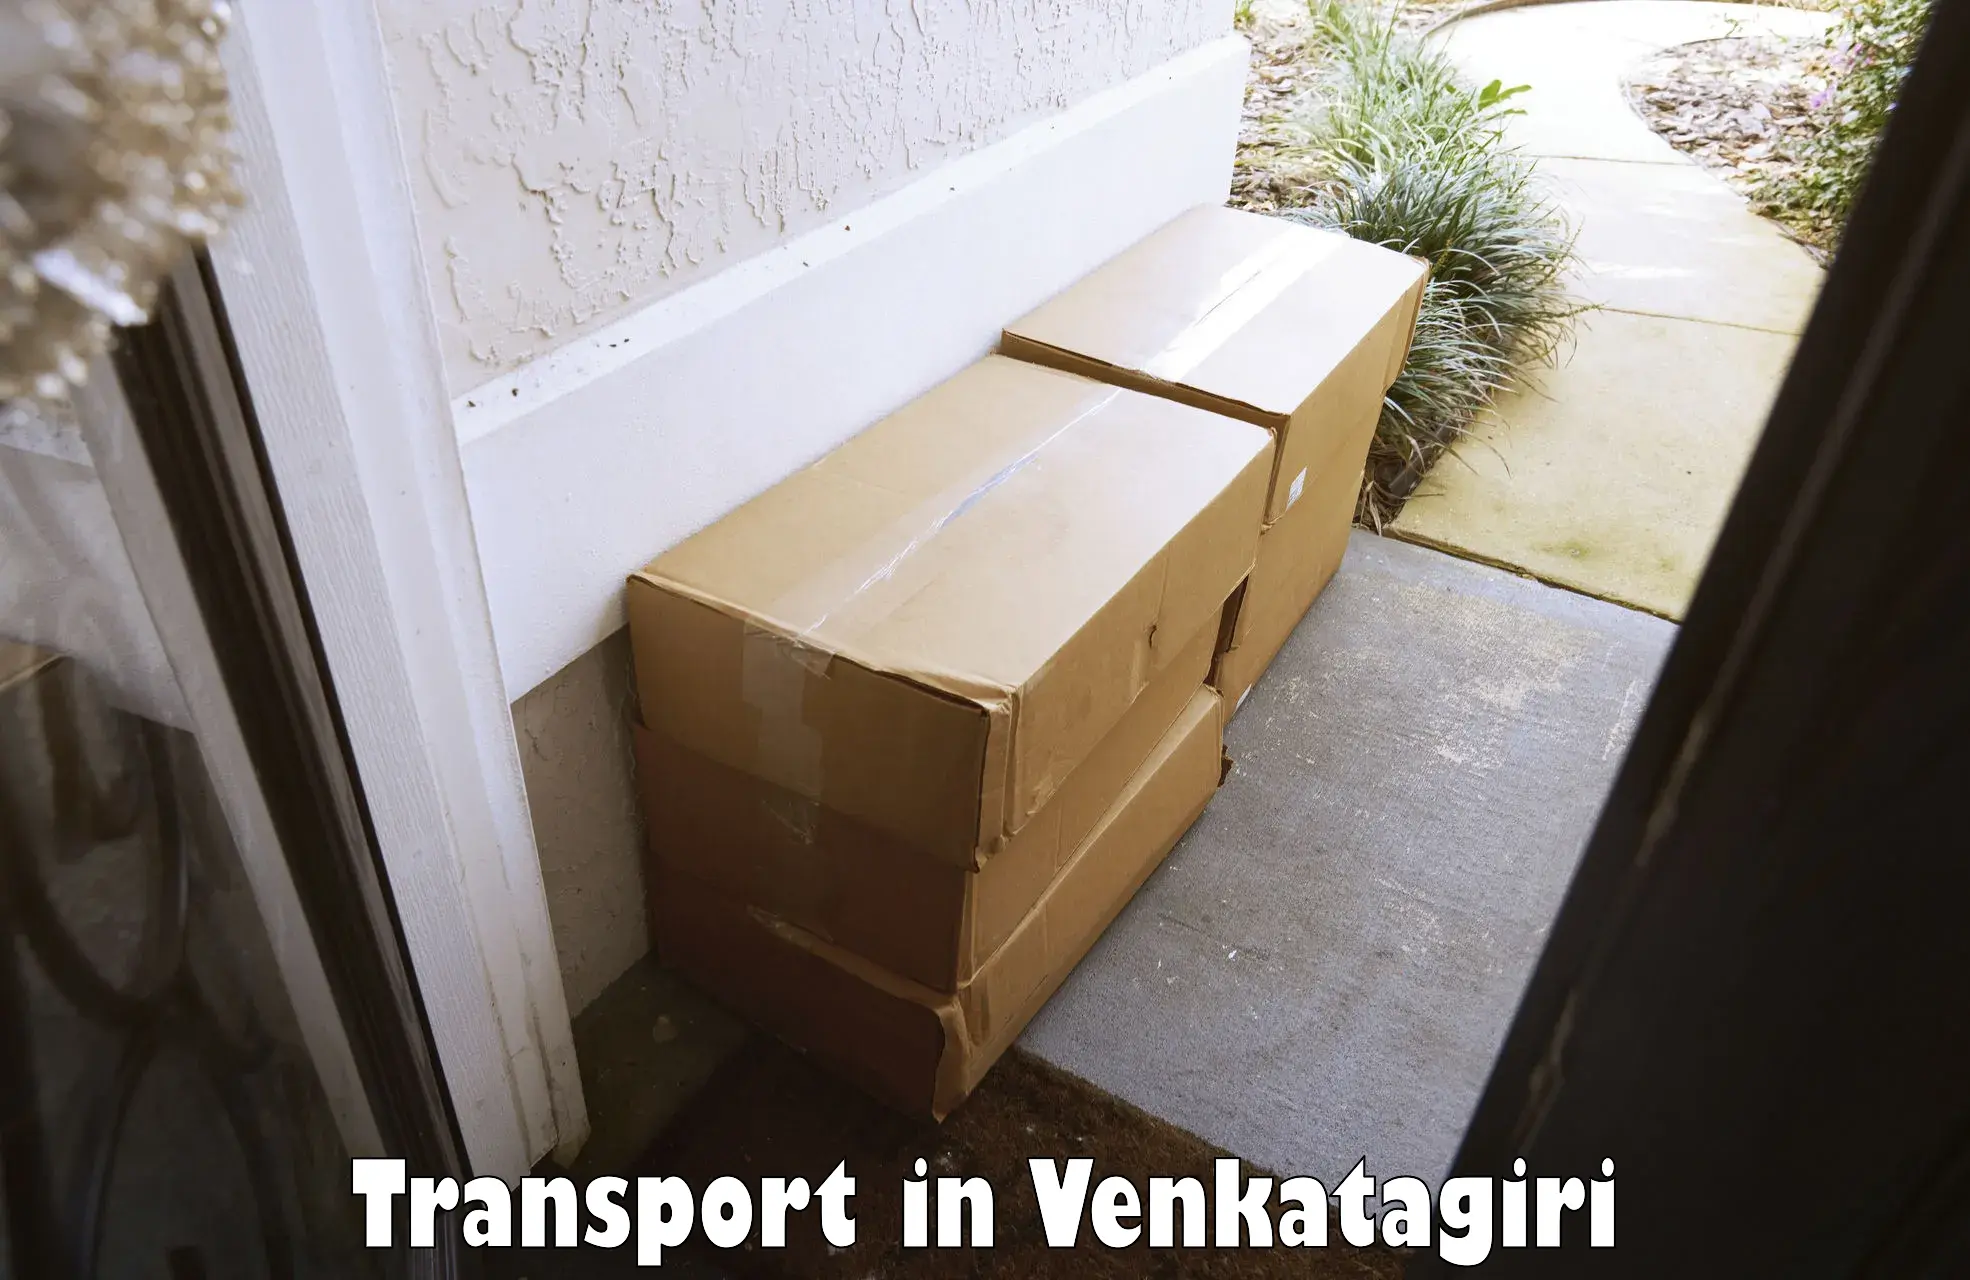 Transport services in Venkatagiri